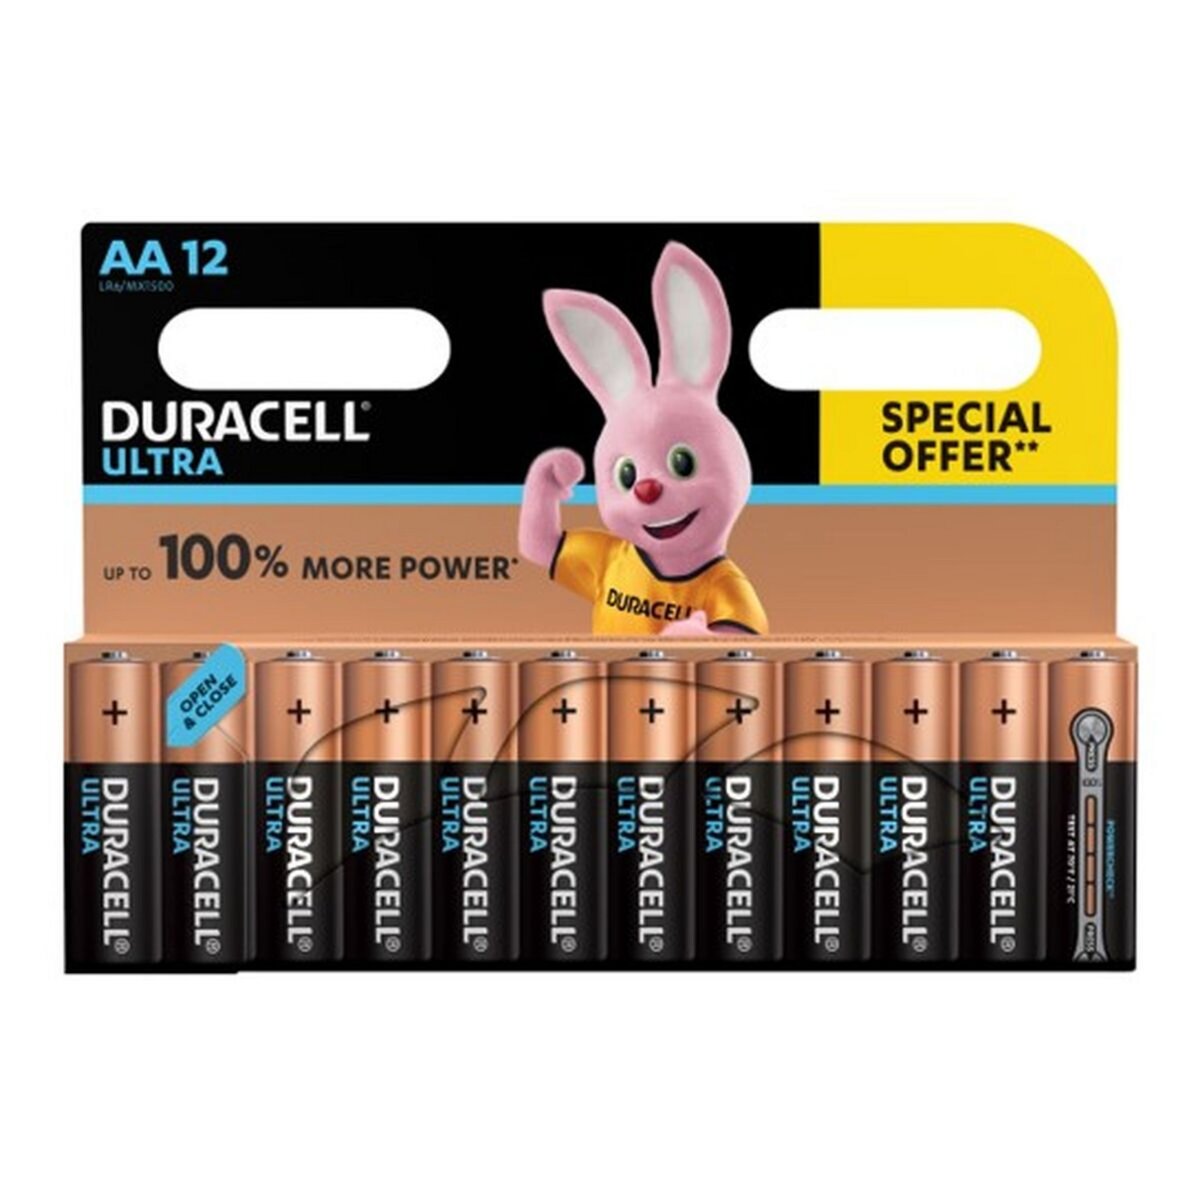 DURACELL Lot de 12 piles alcalines Ultra Power type AA LR06 